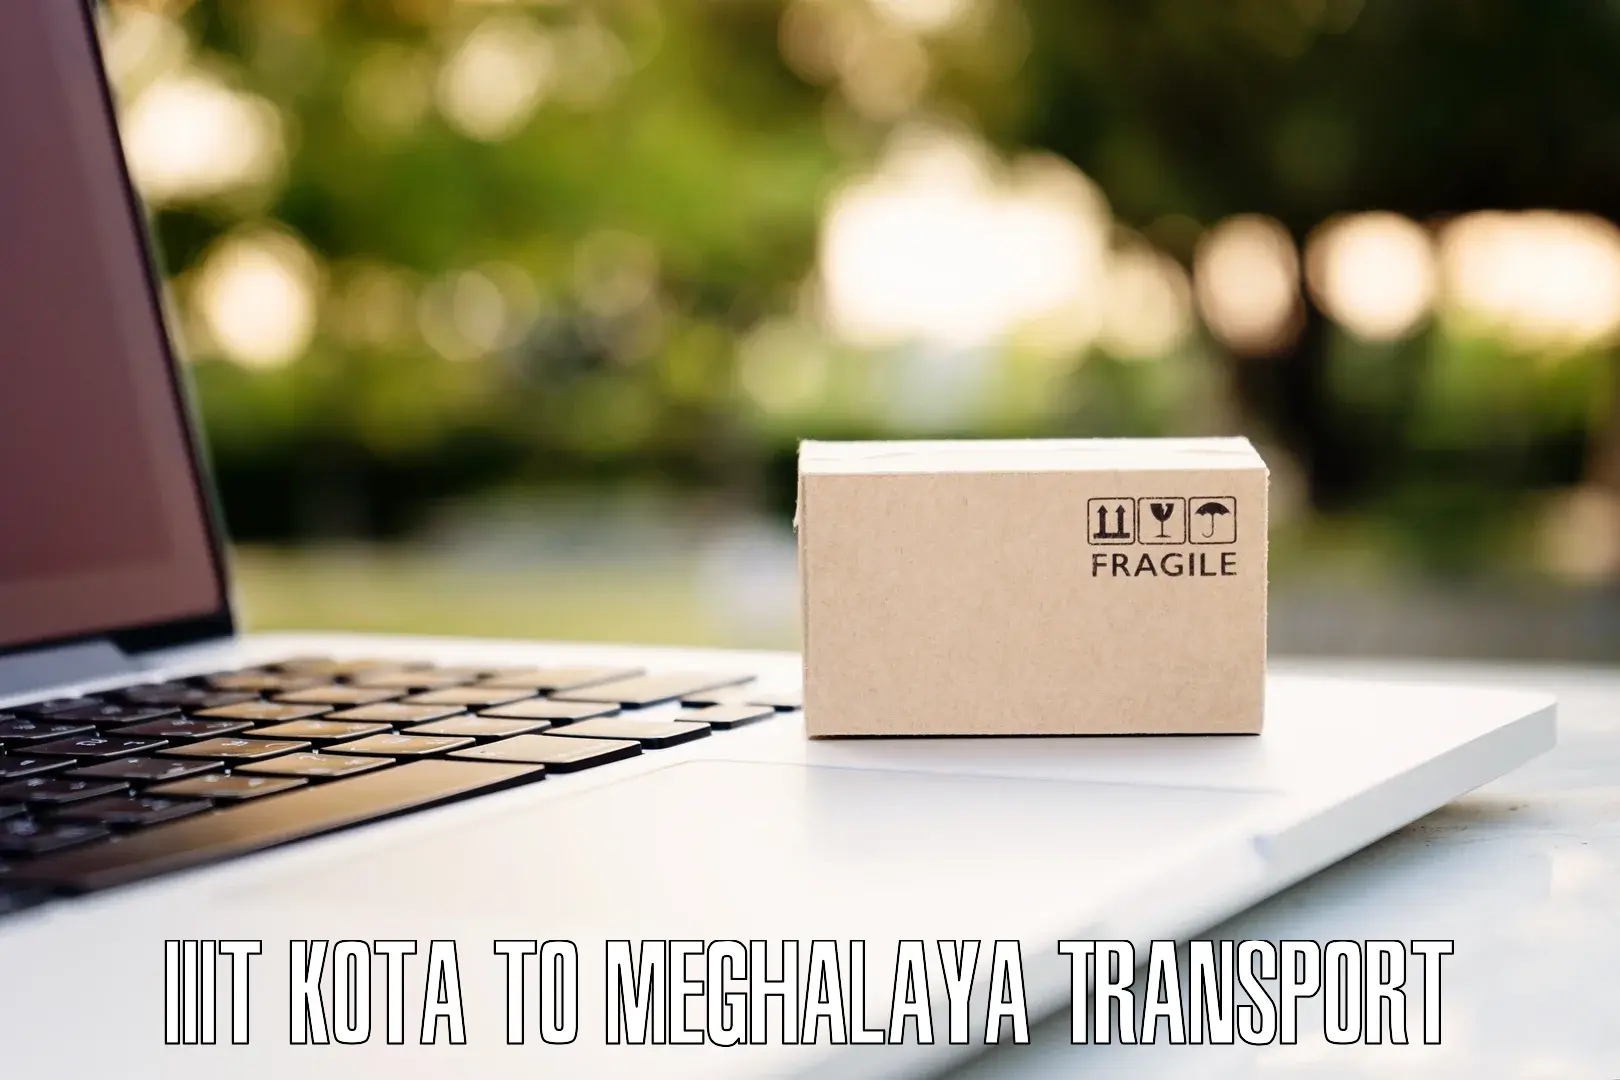 Online transport booking IIIT Kota to Nongstoin